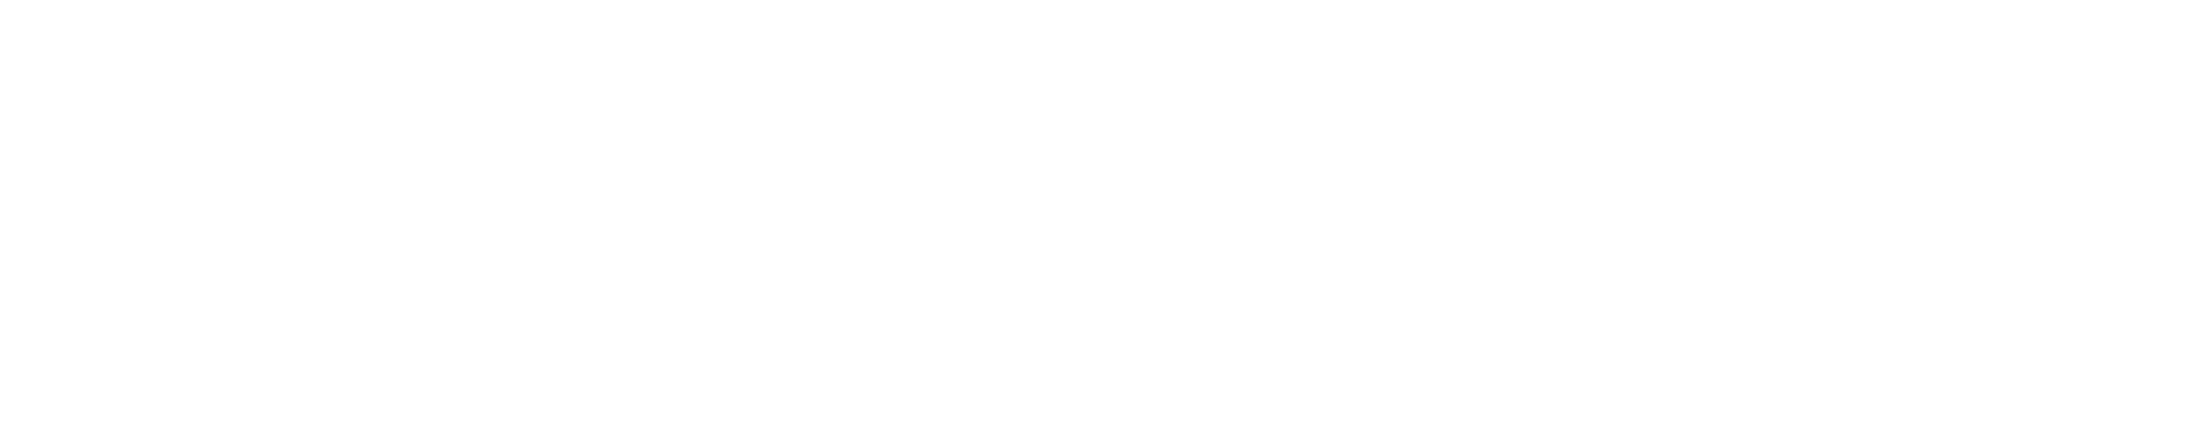 Florida Avenue Brewing Online Shop